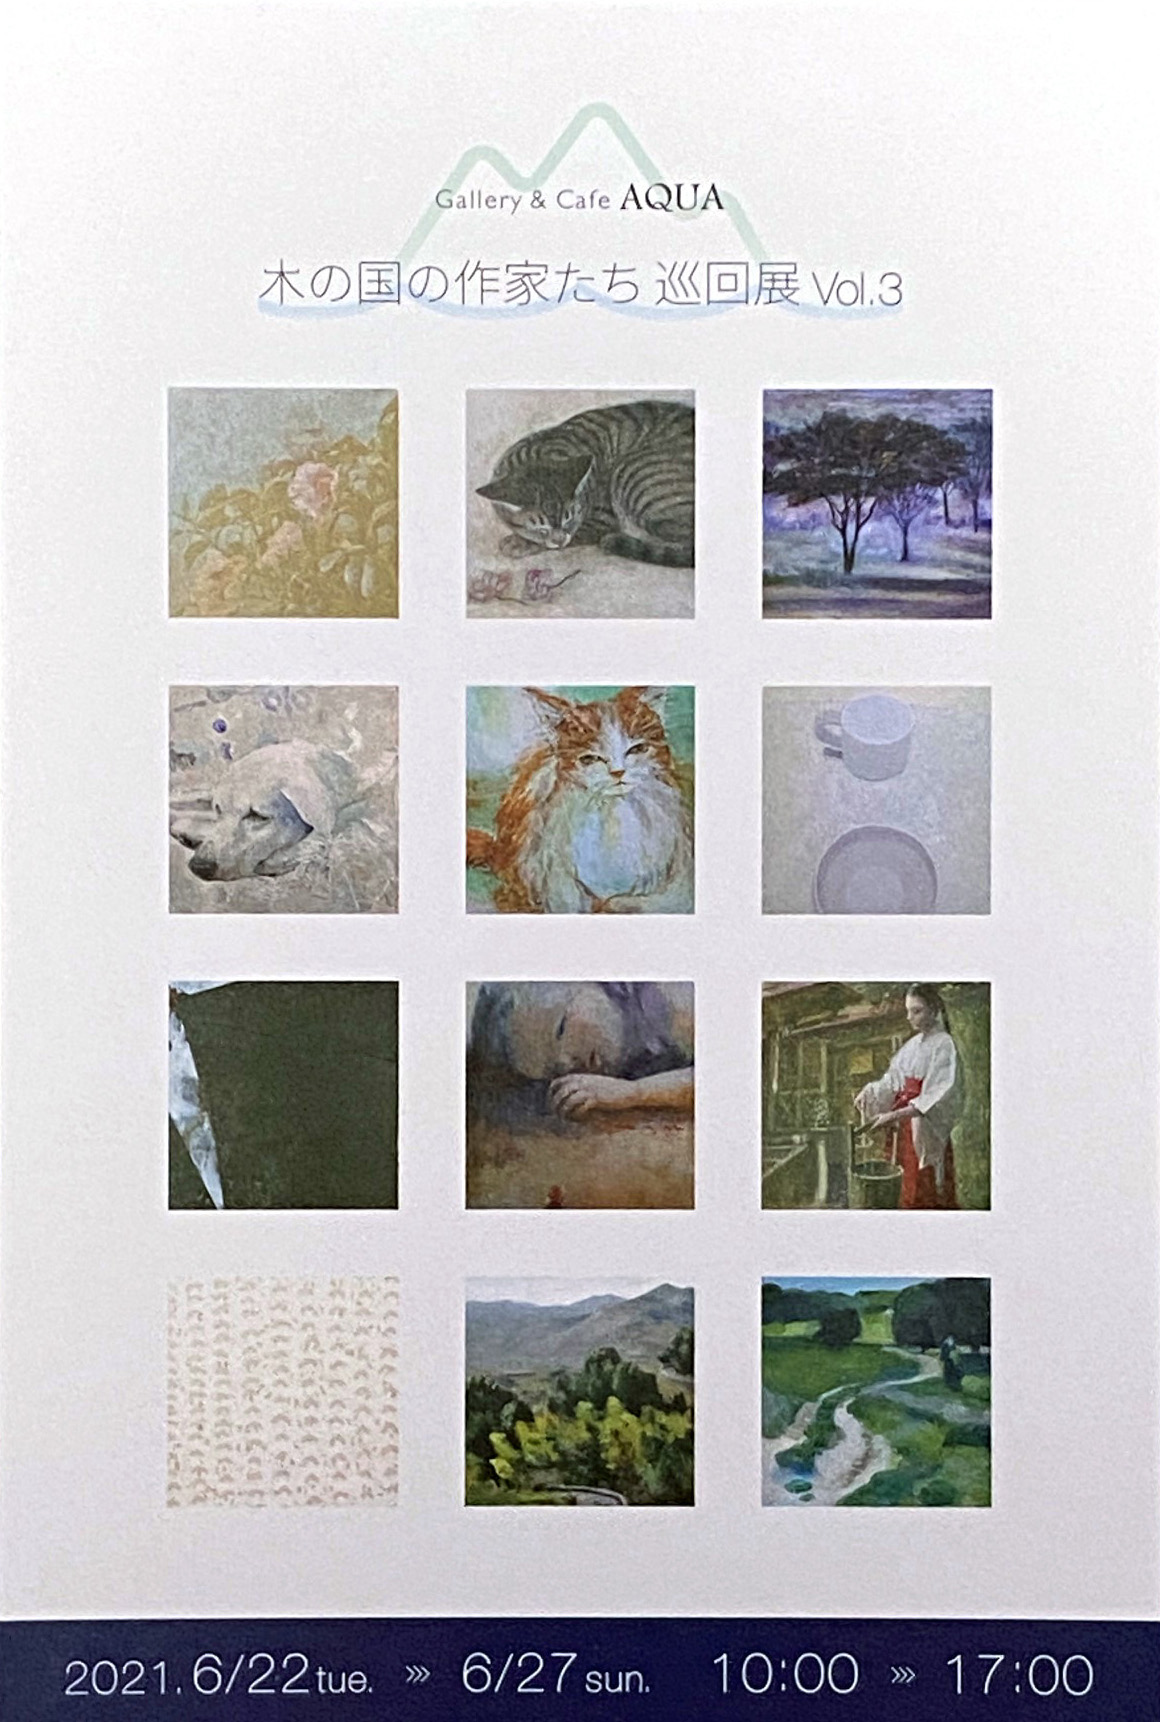 2021.06.17｜木の国の作家たち巡回展Vol.3｜和歌山市のGallery & Cafe AQUAで「木の国の作家たち巡回展Vol.3」が開催されます。<br><br>会期　2021年6月22日(火)～6月27日(日)<br>会場　Gallery & Cafe AQUA